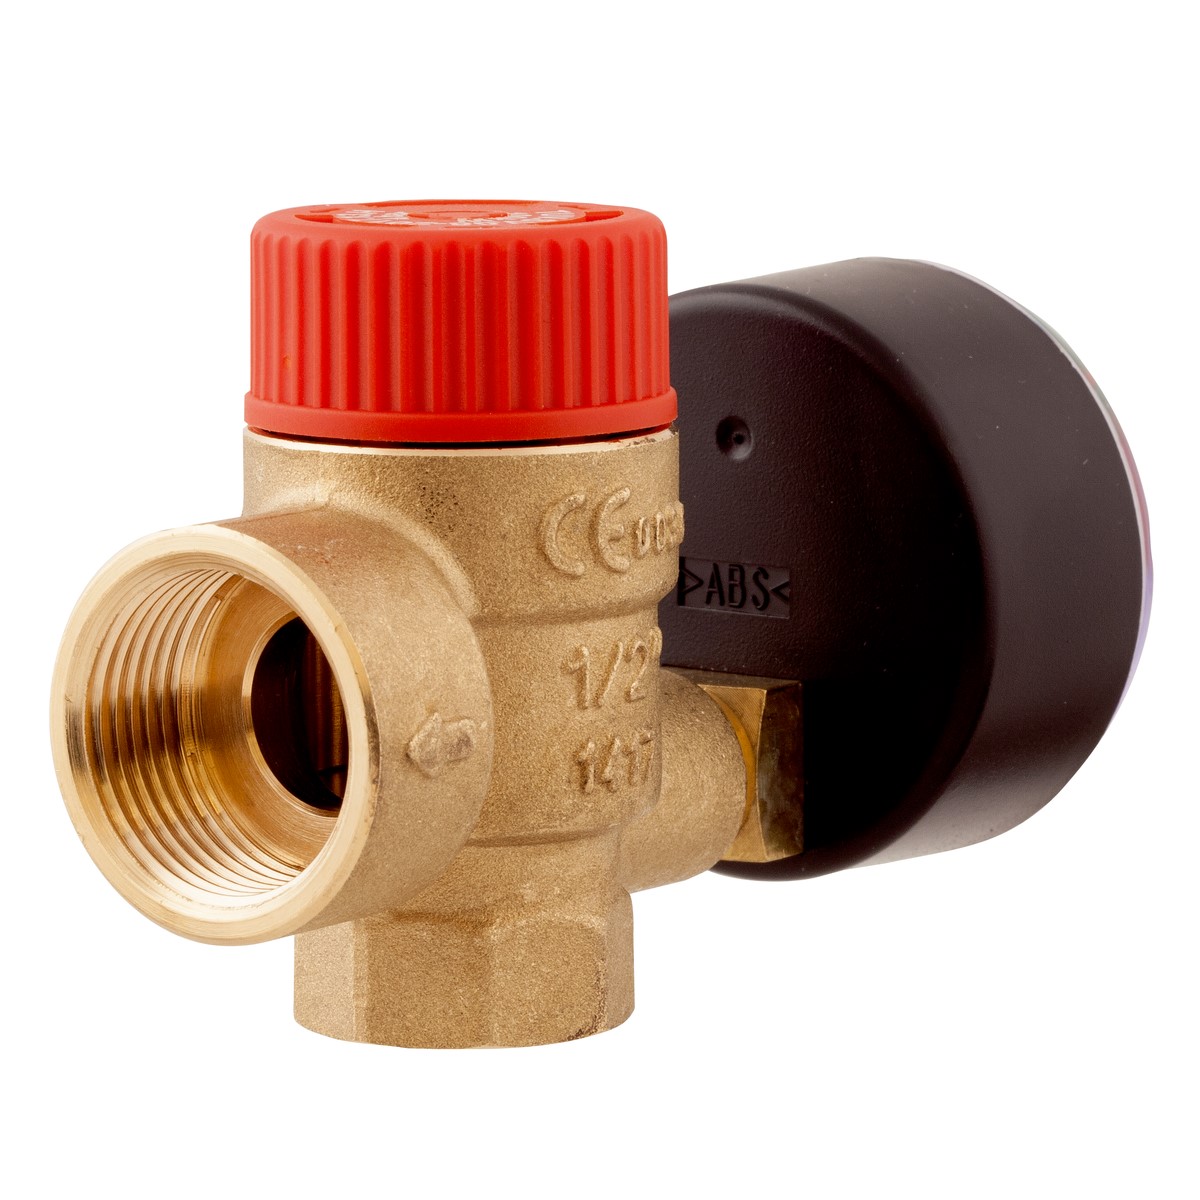 Pojistný ventil pro ústřední topení MS s výstupem pro manometr GW G¼", 2,5 baru, G½" x Rp½" - AFRISO.CZ